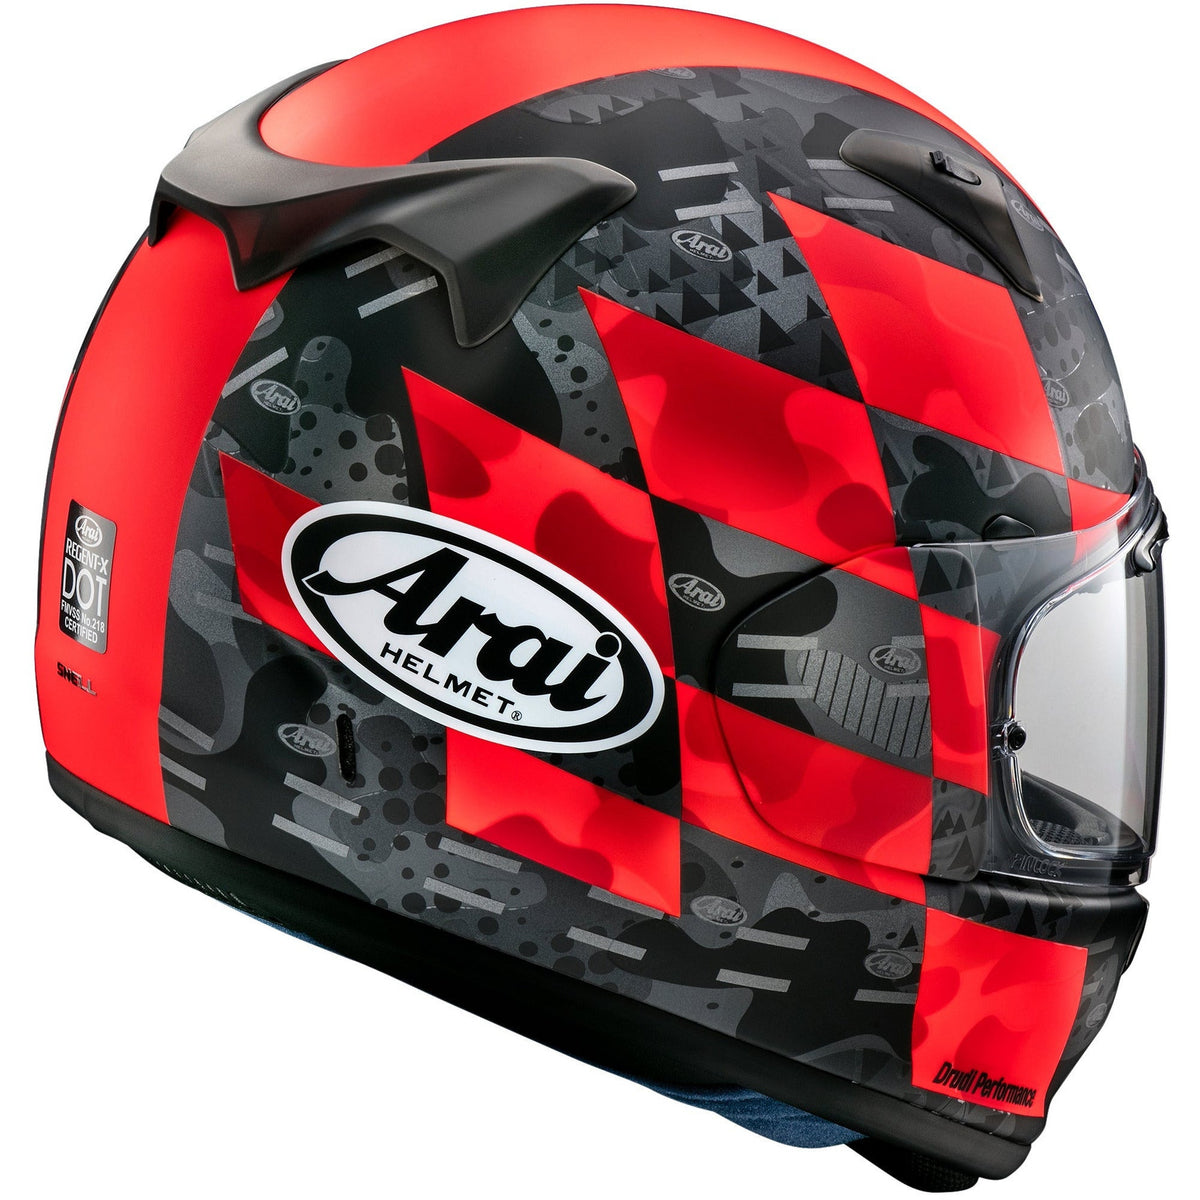 Regent-X Helmet (Patch Red Frost)